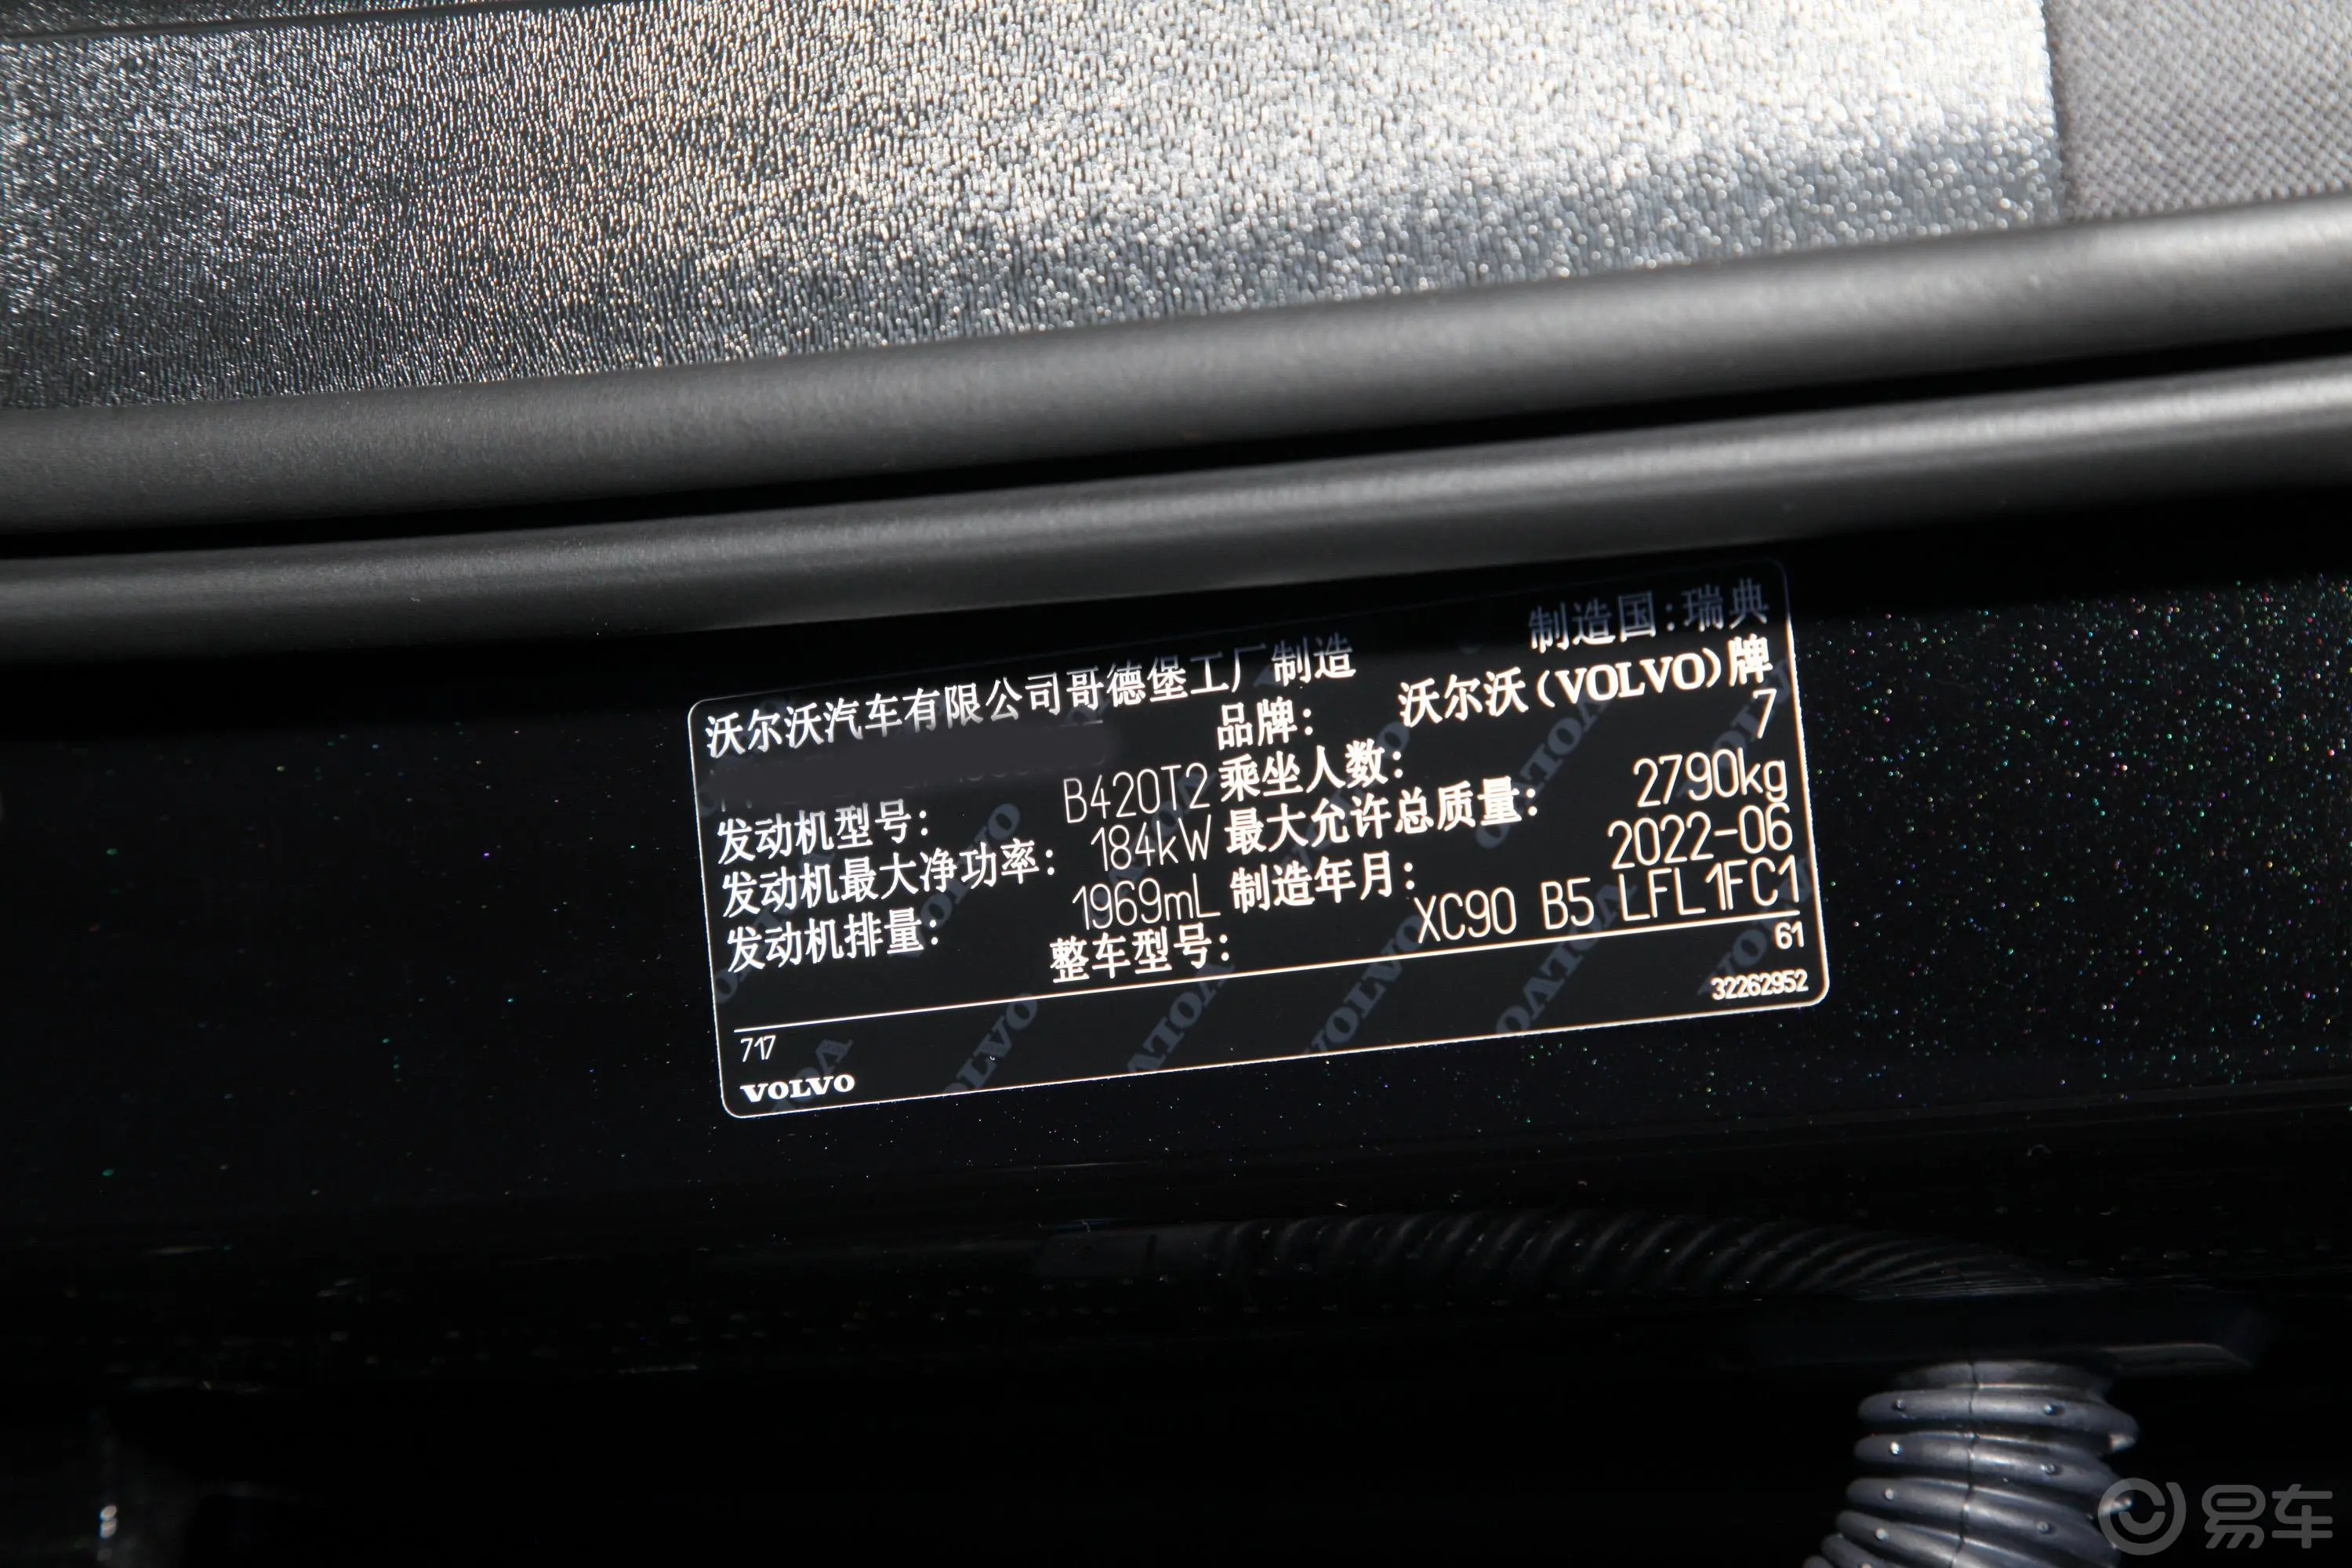 沃尔沃XC90B5 智行豪华版 7座车辆信息铭牌